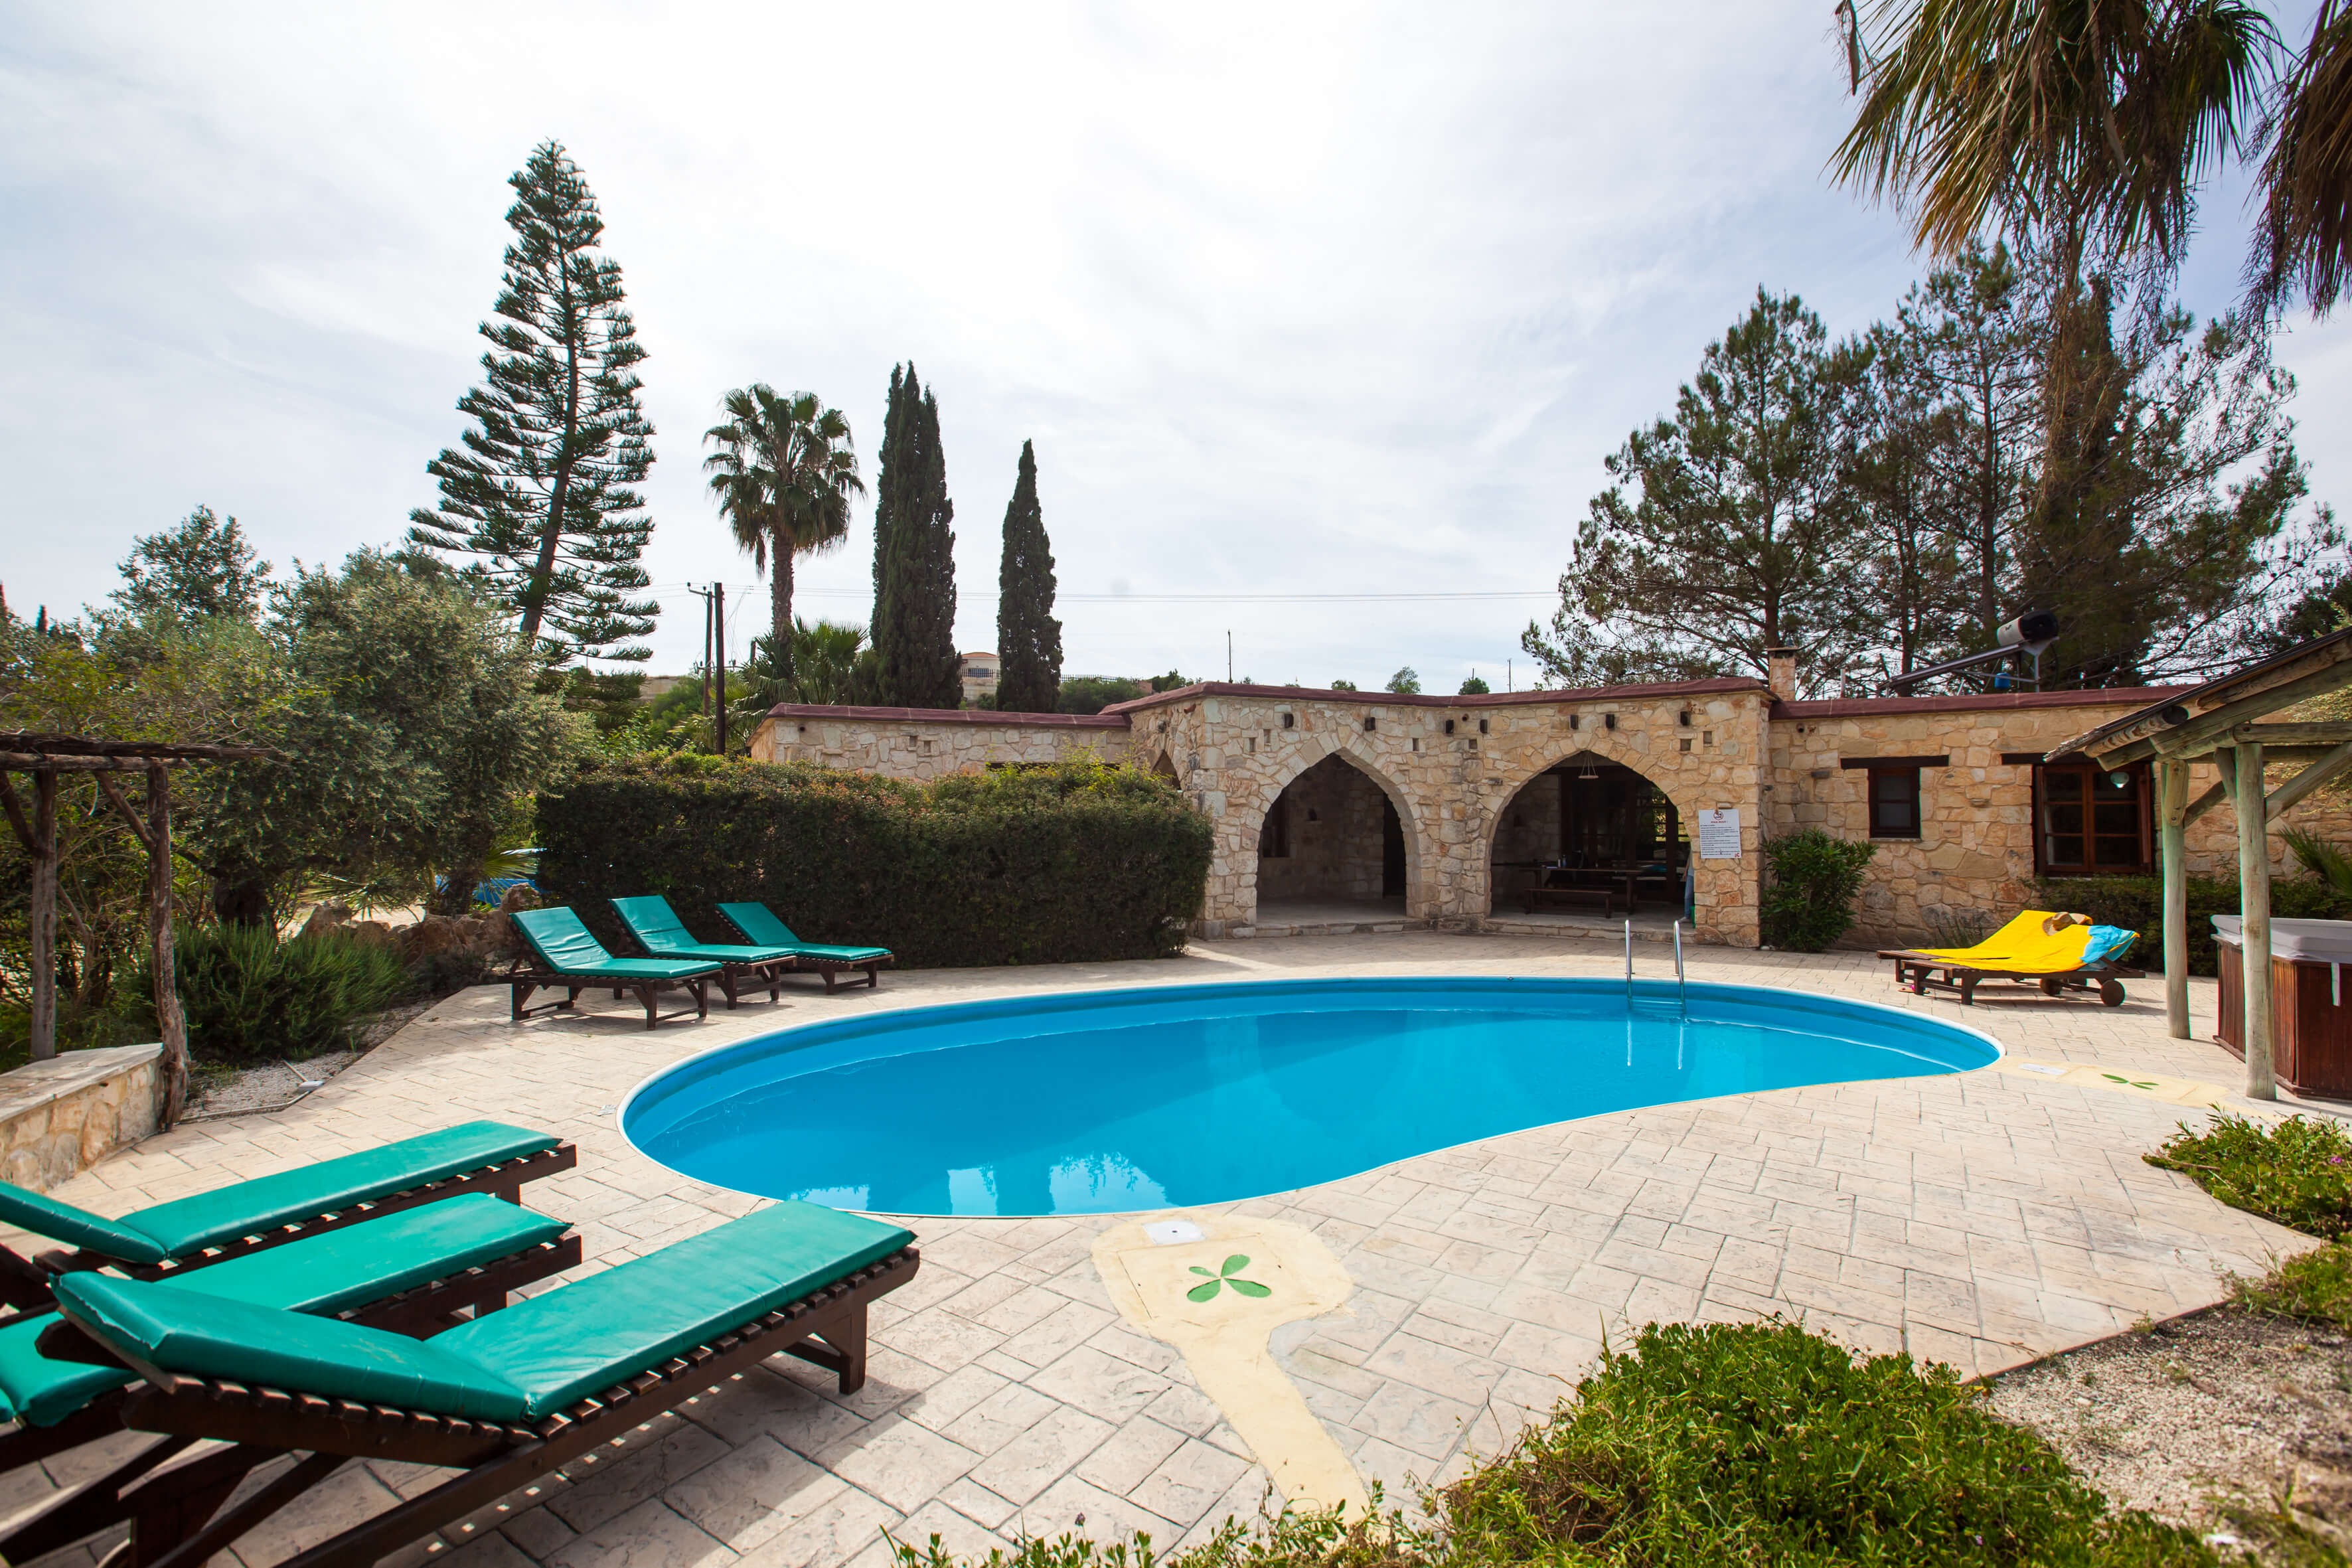 Cyprus Villa Holidays